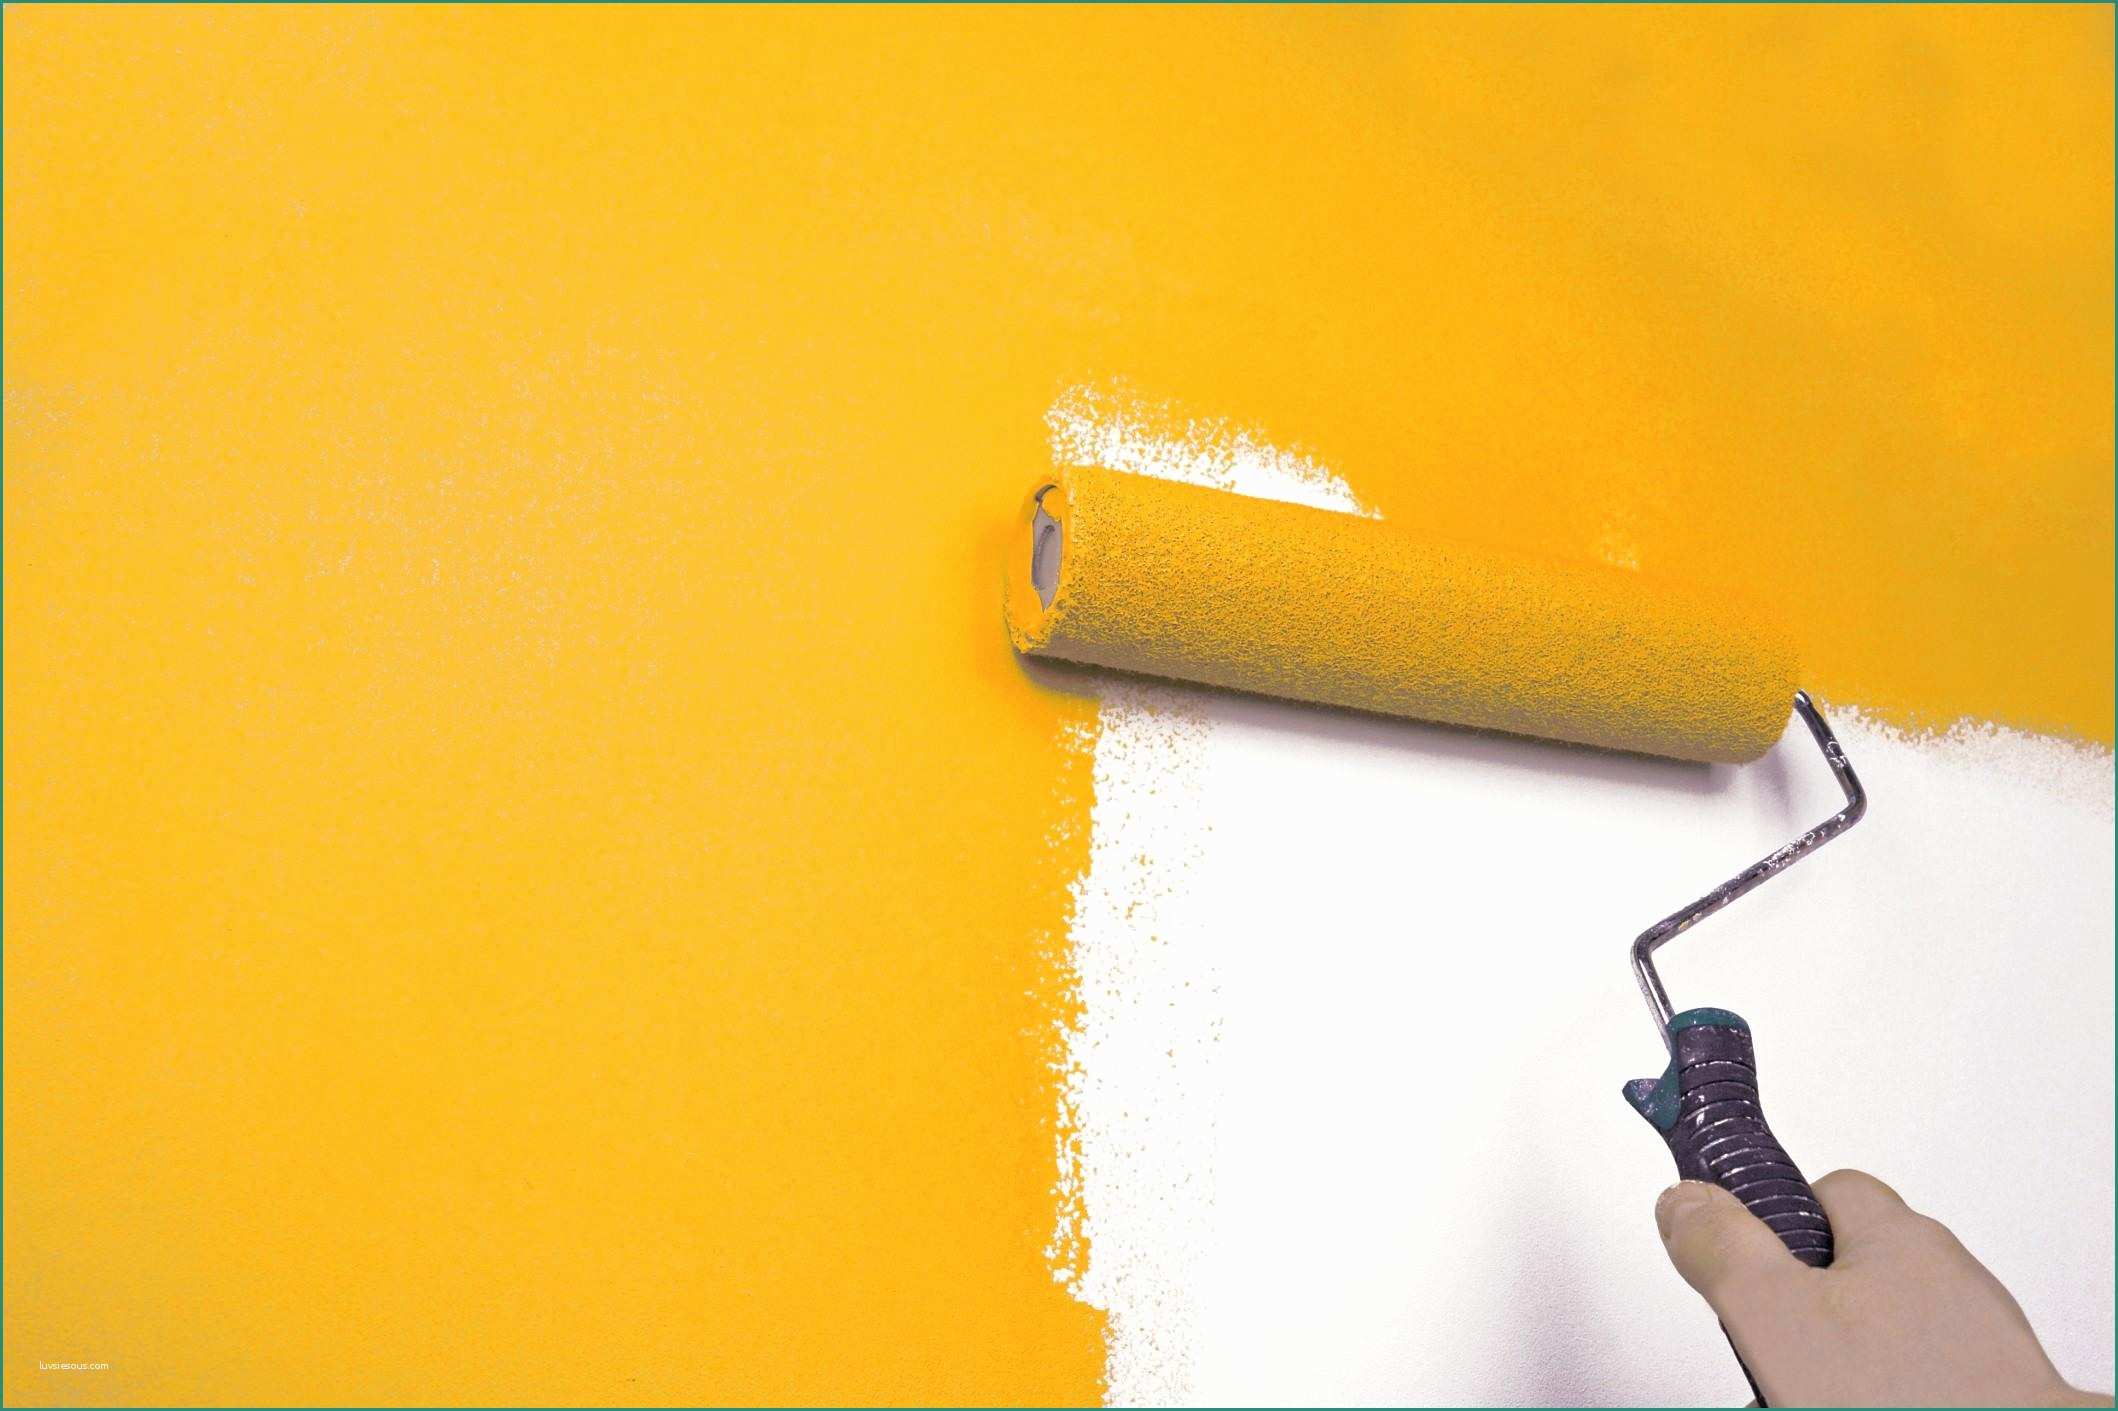 Pitturare Esterno Casa E Pitture Per Muri Esterni Great Intonaco Per Esterni with Pitture